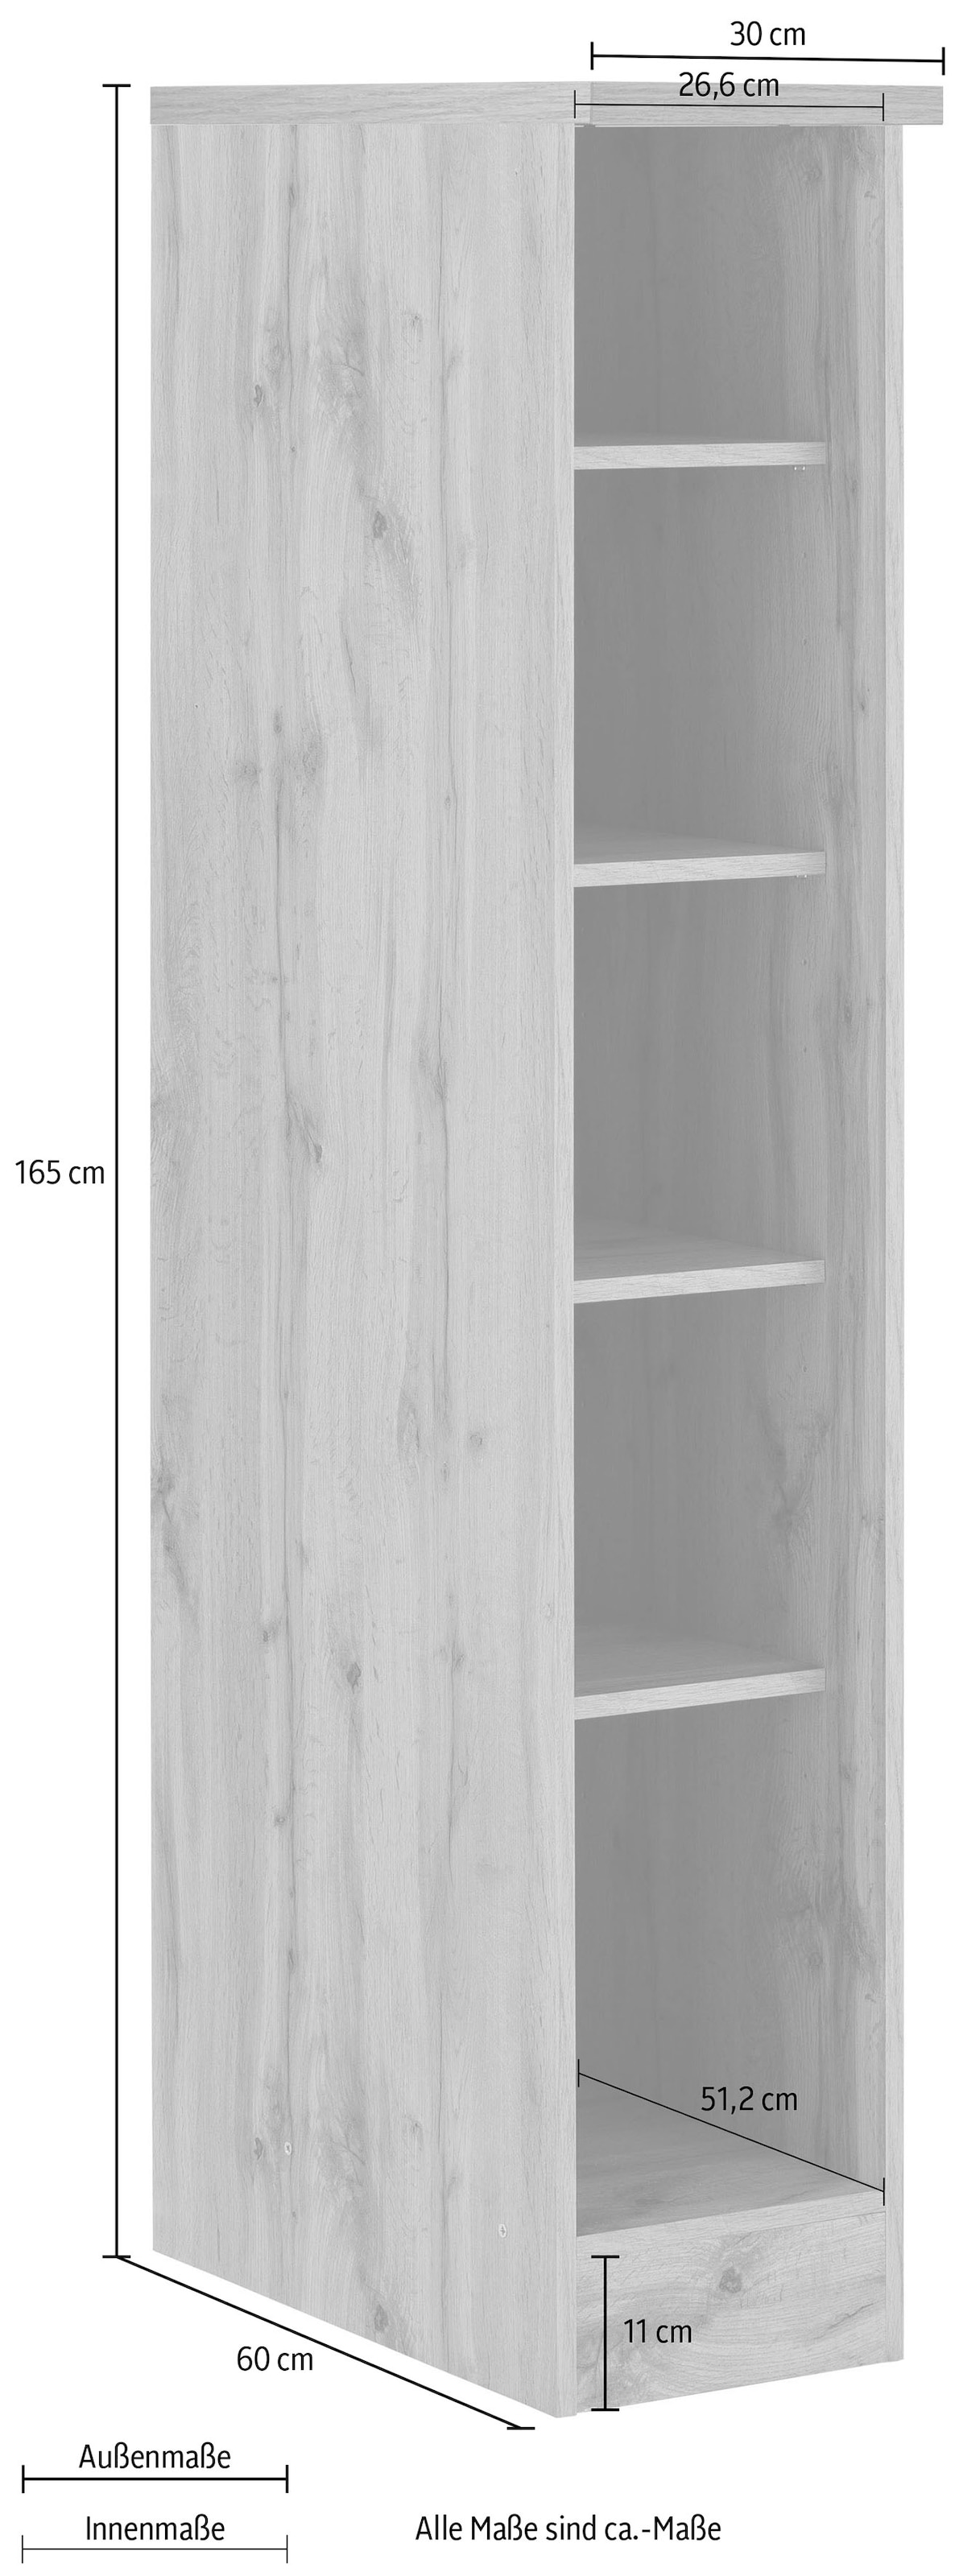 HELD MÖBEL Küchenregal »Colmar«, 30 cm breit, 165 cm hoch, 4 verstellbare Einlegeböden, viel Stauraum